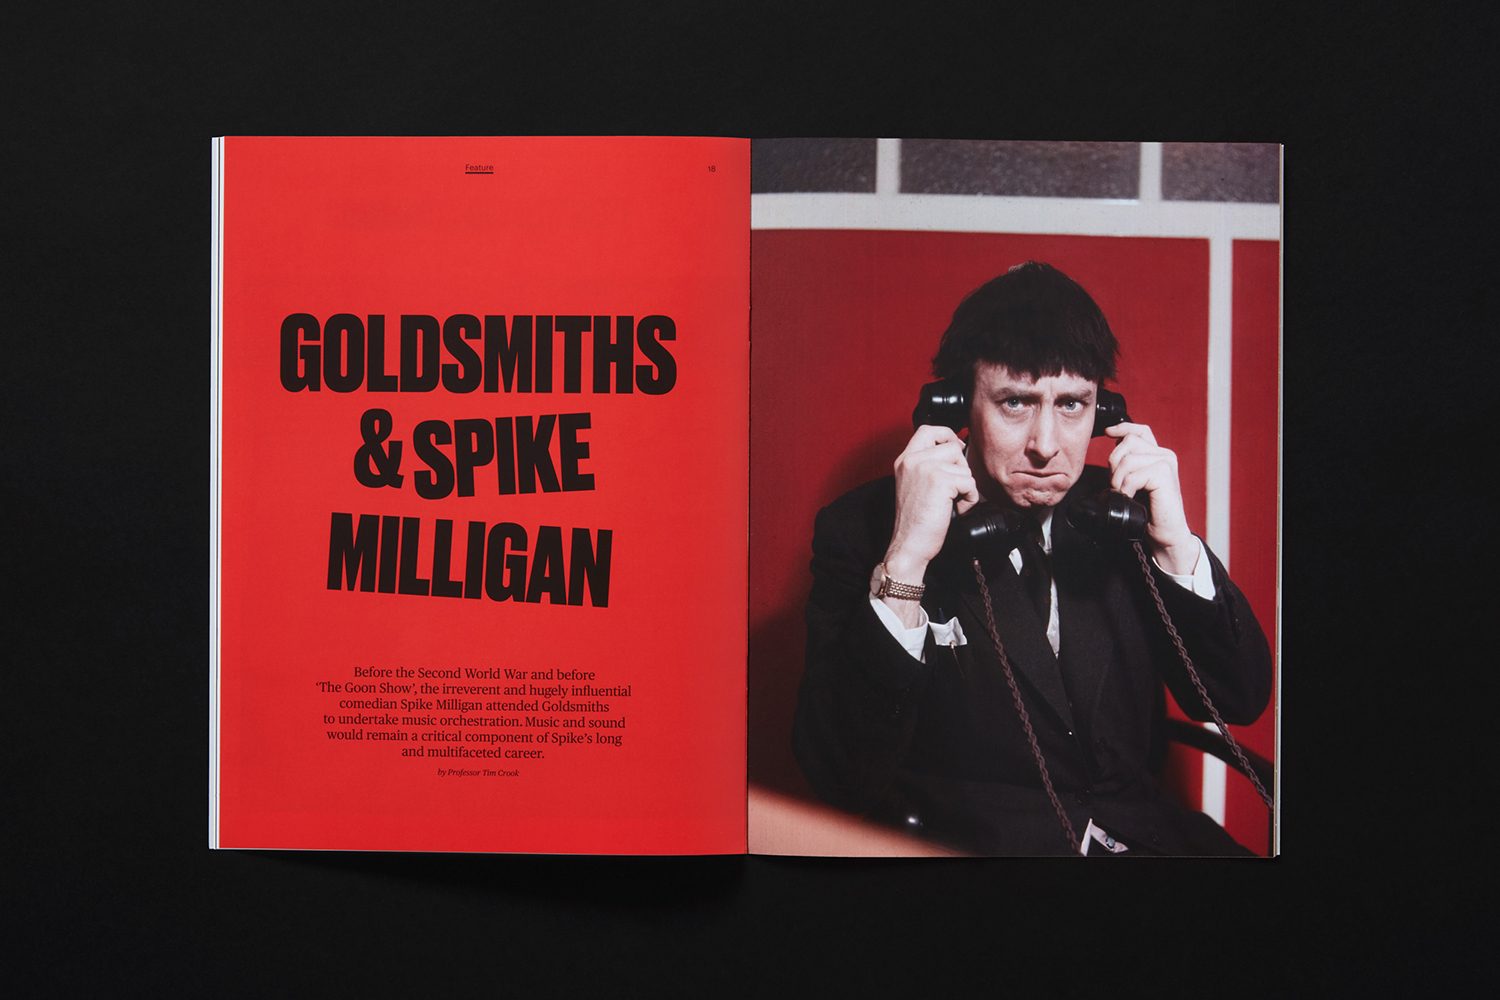 New design by Spy for Goldsmiths' alumni magazine Goldlink